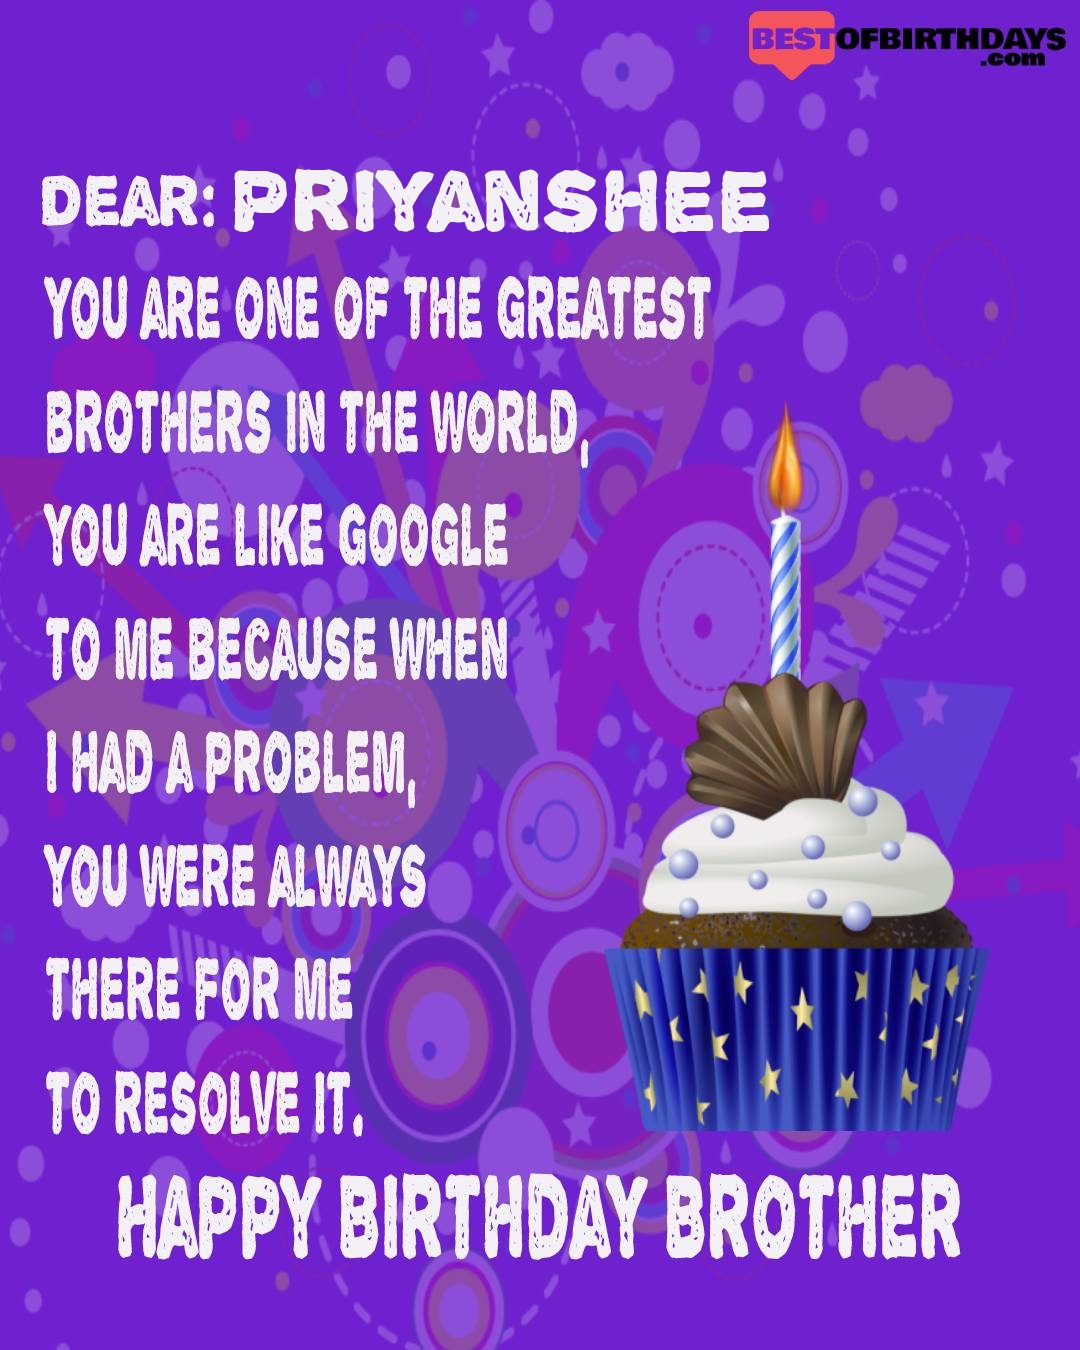 Happy birthday priyanshee bhai brother bro